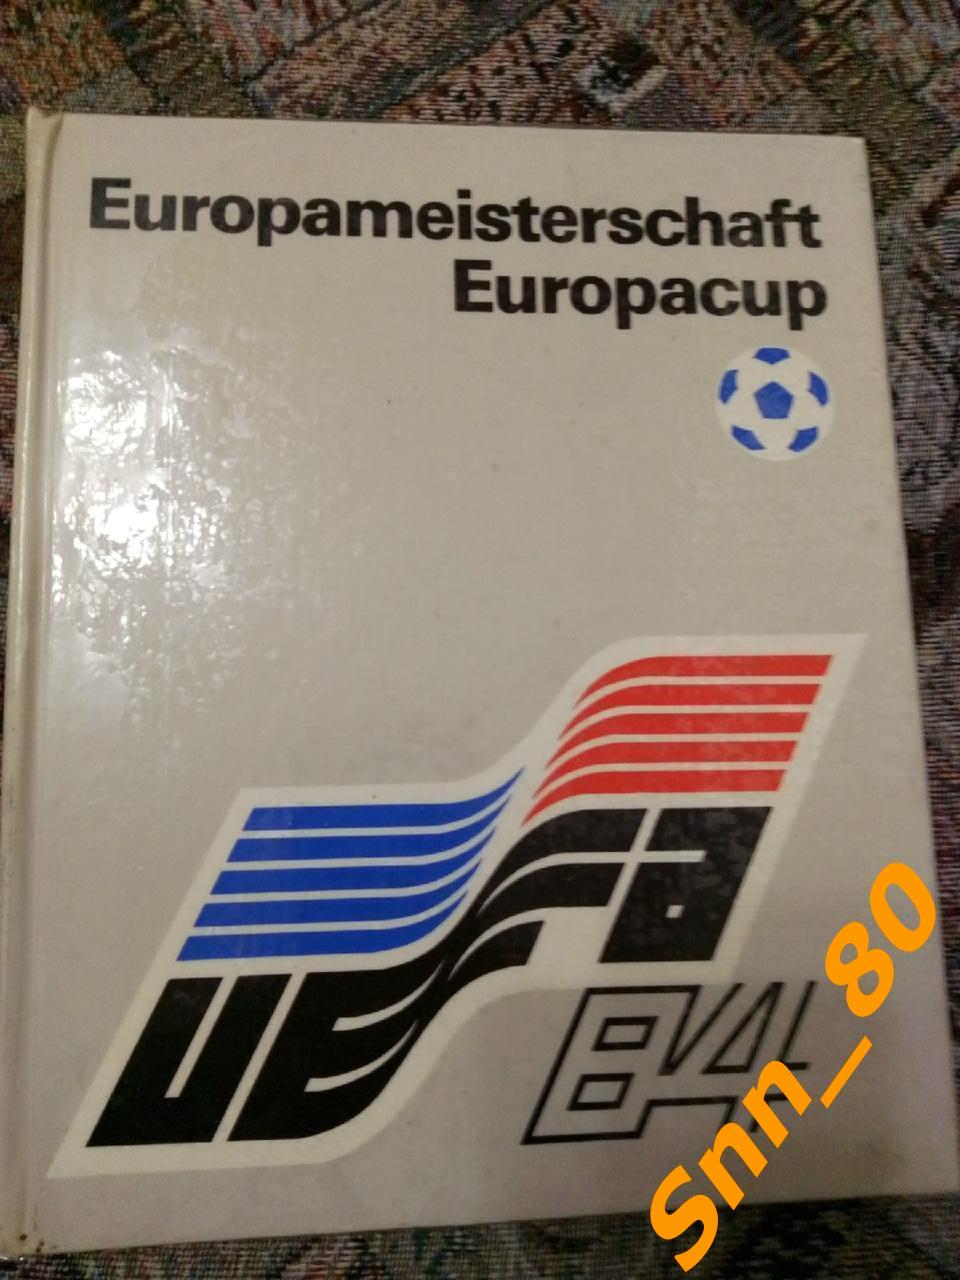 6 Europameisterschaft Europacup Berlin DDR Чемпионат Европы по футболу 1984